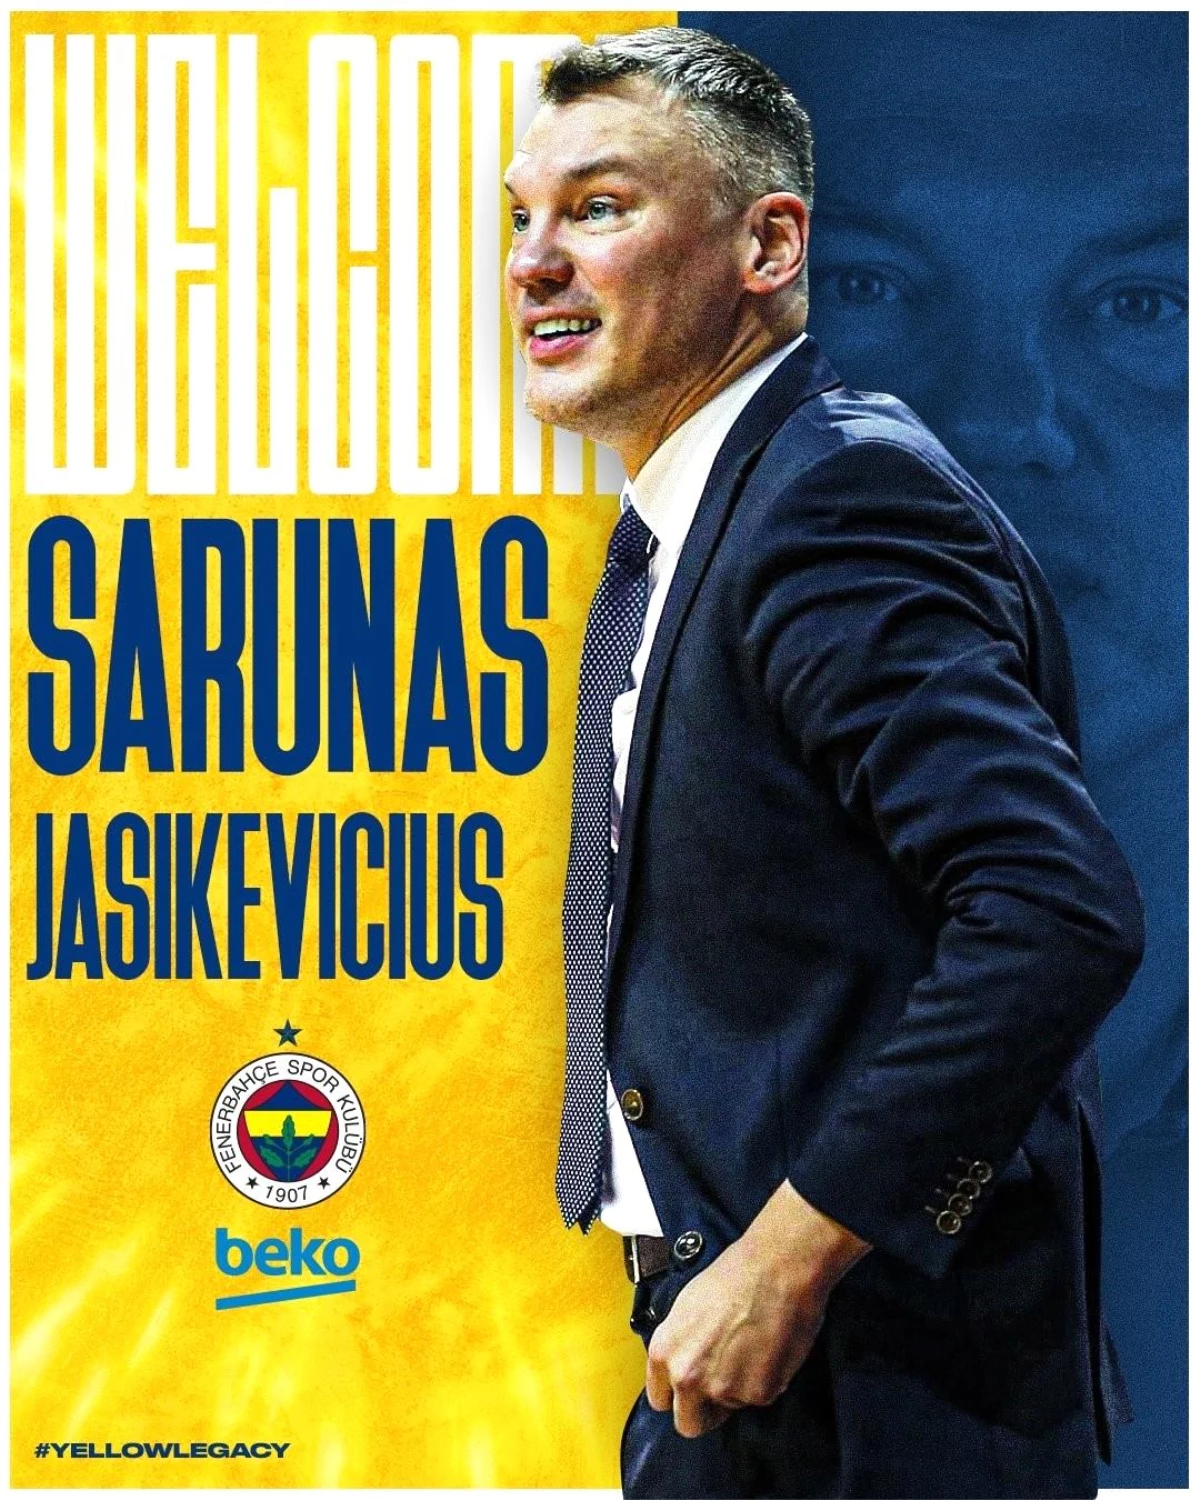 Fenerbahçe Erkek Basketbol Takımı\'nda başantrenörlük görevine Sarunas Jasikevicius\'un getirildiği açıklandı.